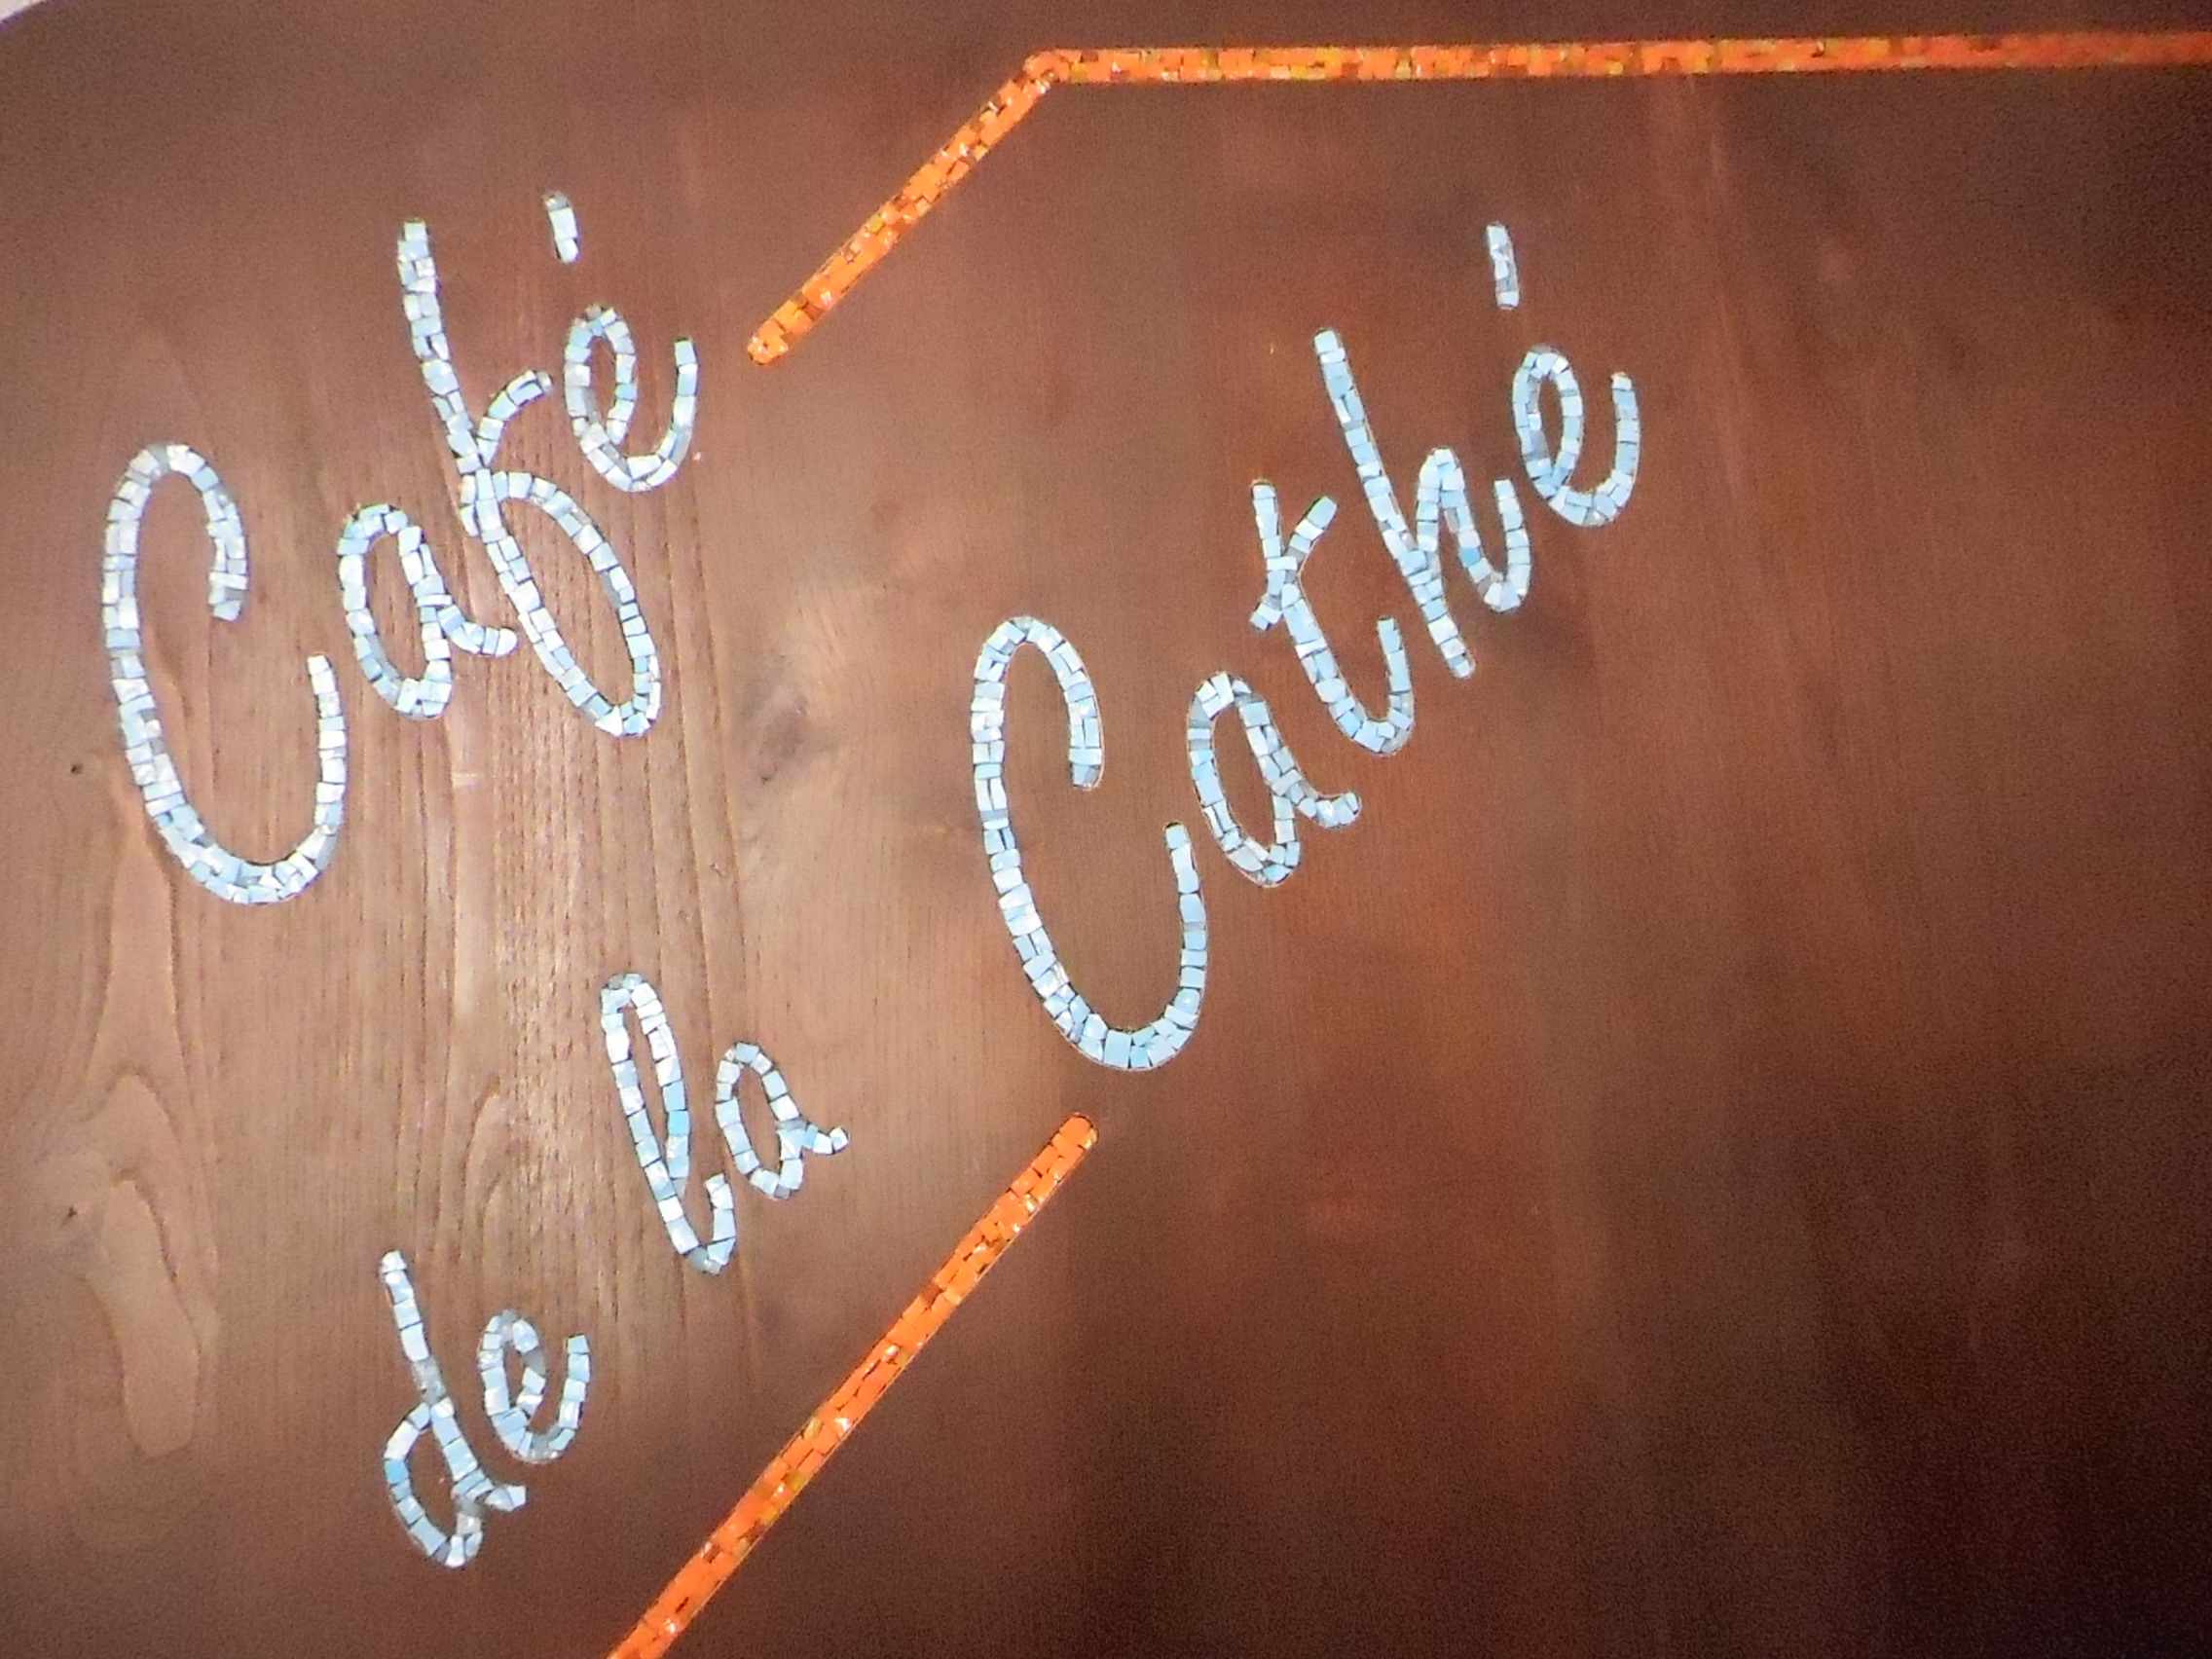 CAFé CATHé